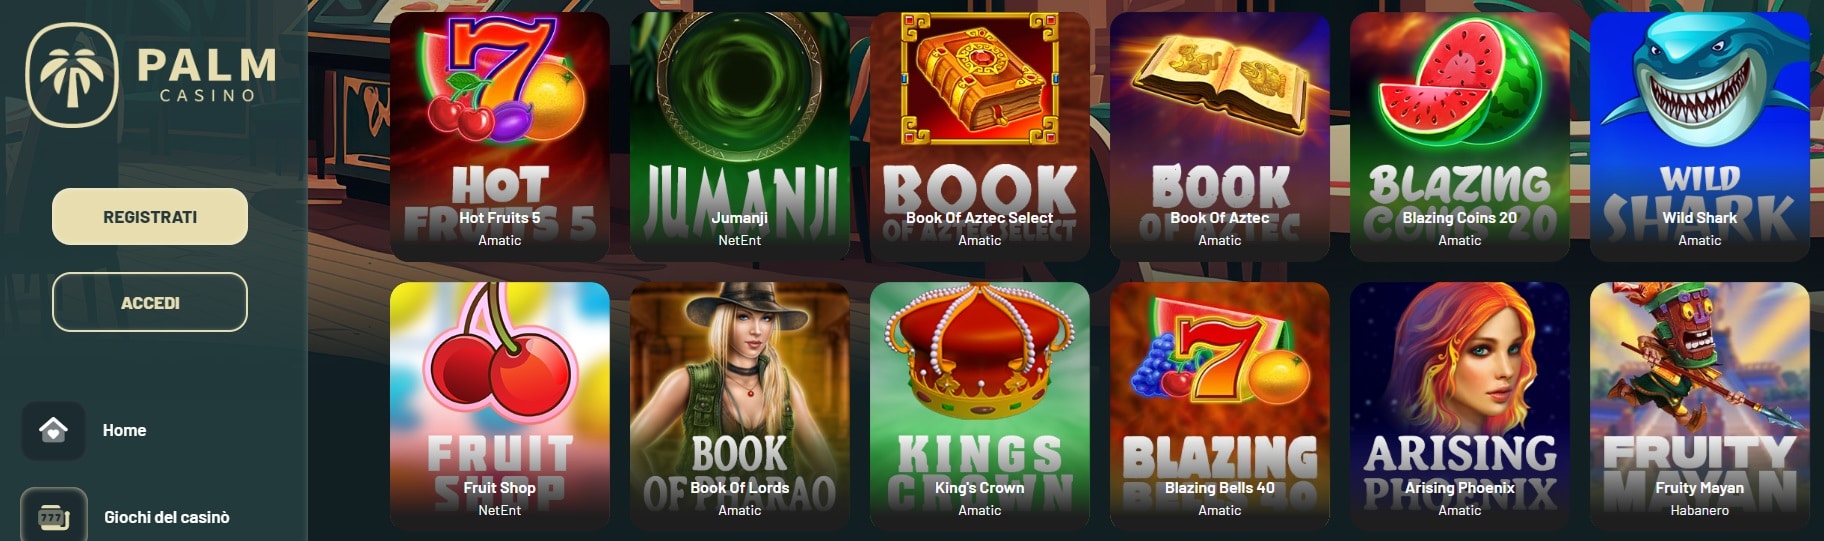 giochi da casinò online Palm Casino